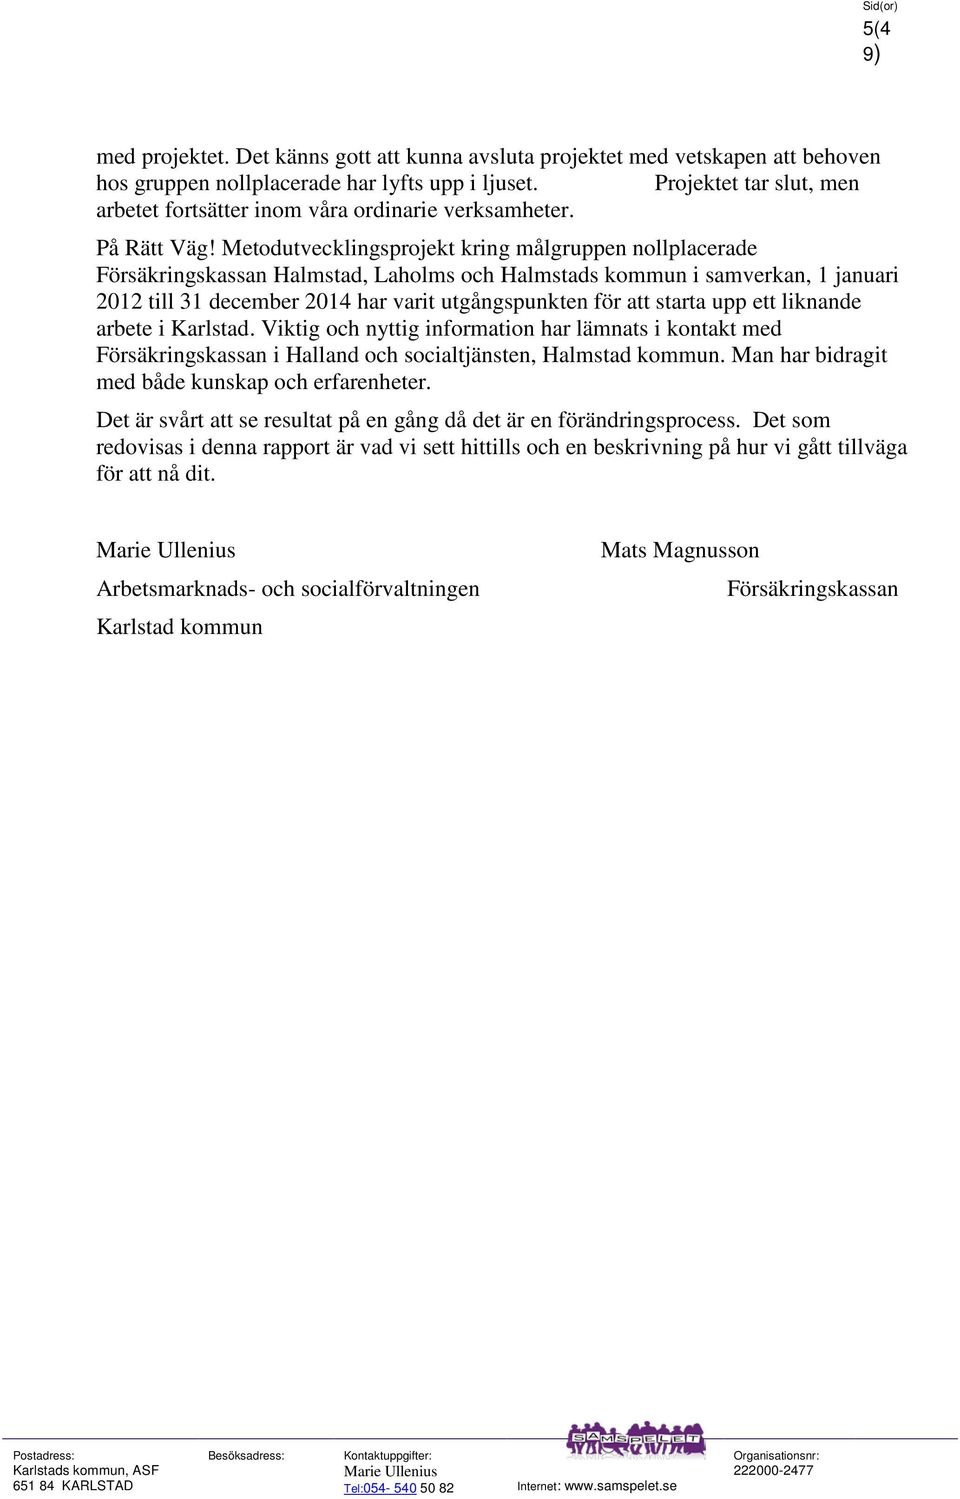 Metodutvecklingsprojekt kring målgruppen nollplacerade Försäkringskassan Halmstad, Laholms och Halmstads kommun i samverkan, 1 januari 2012 till 31 december 2014 har varit utgångspunkten för att